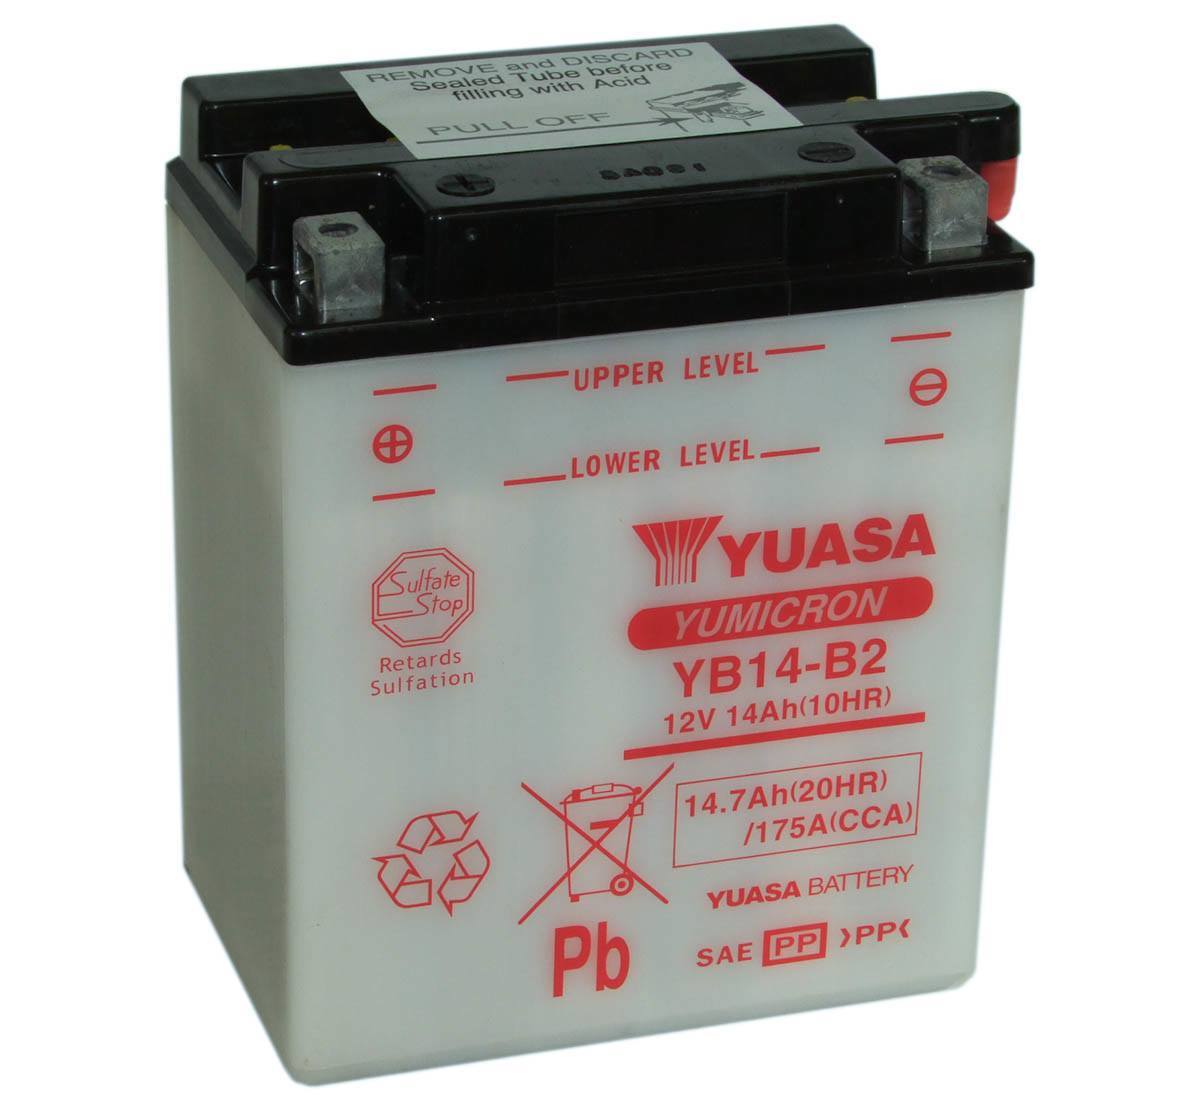 Yuasa YB14-B2 12V Motorbike Battery